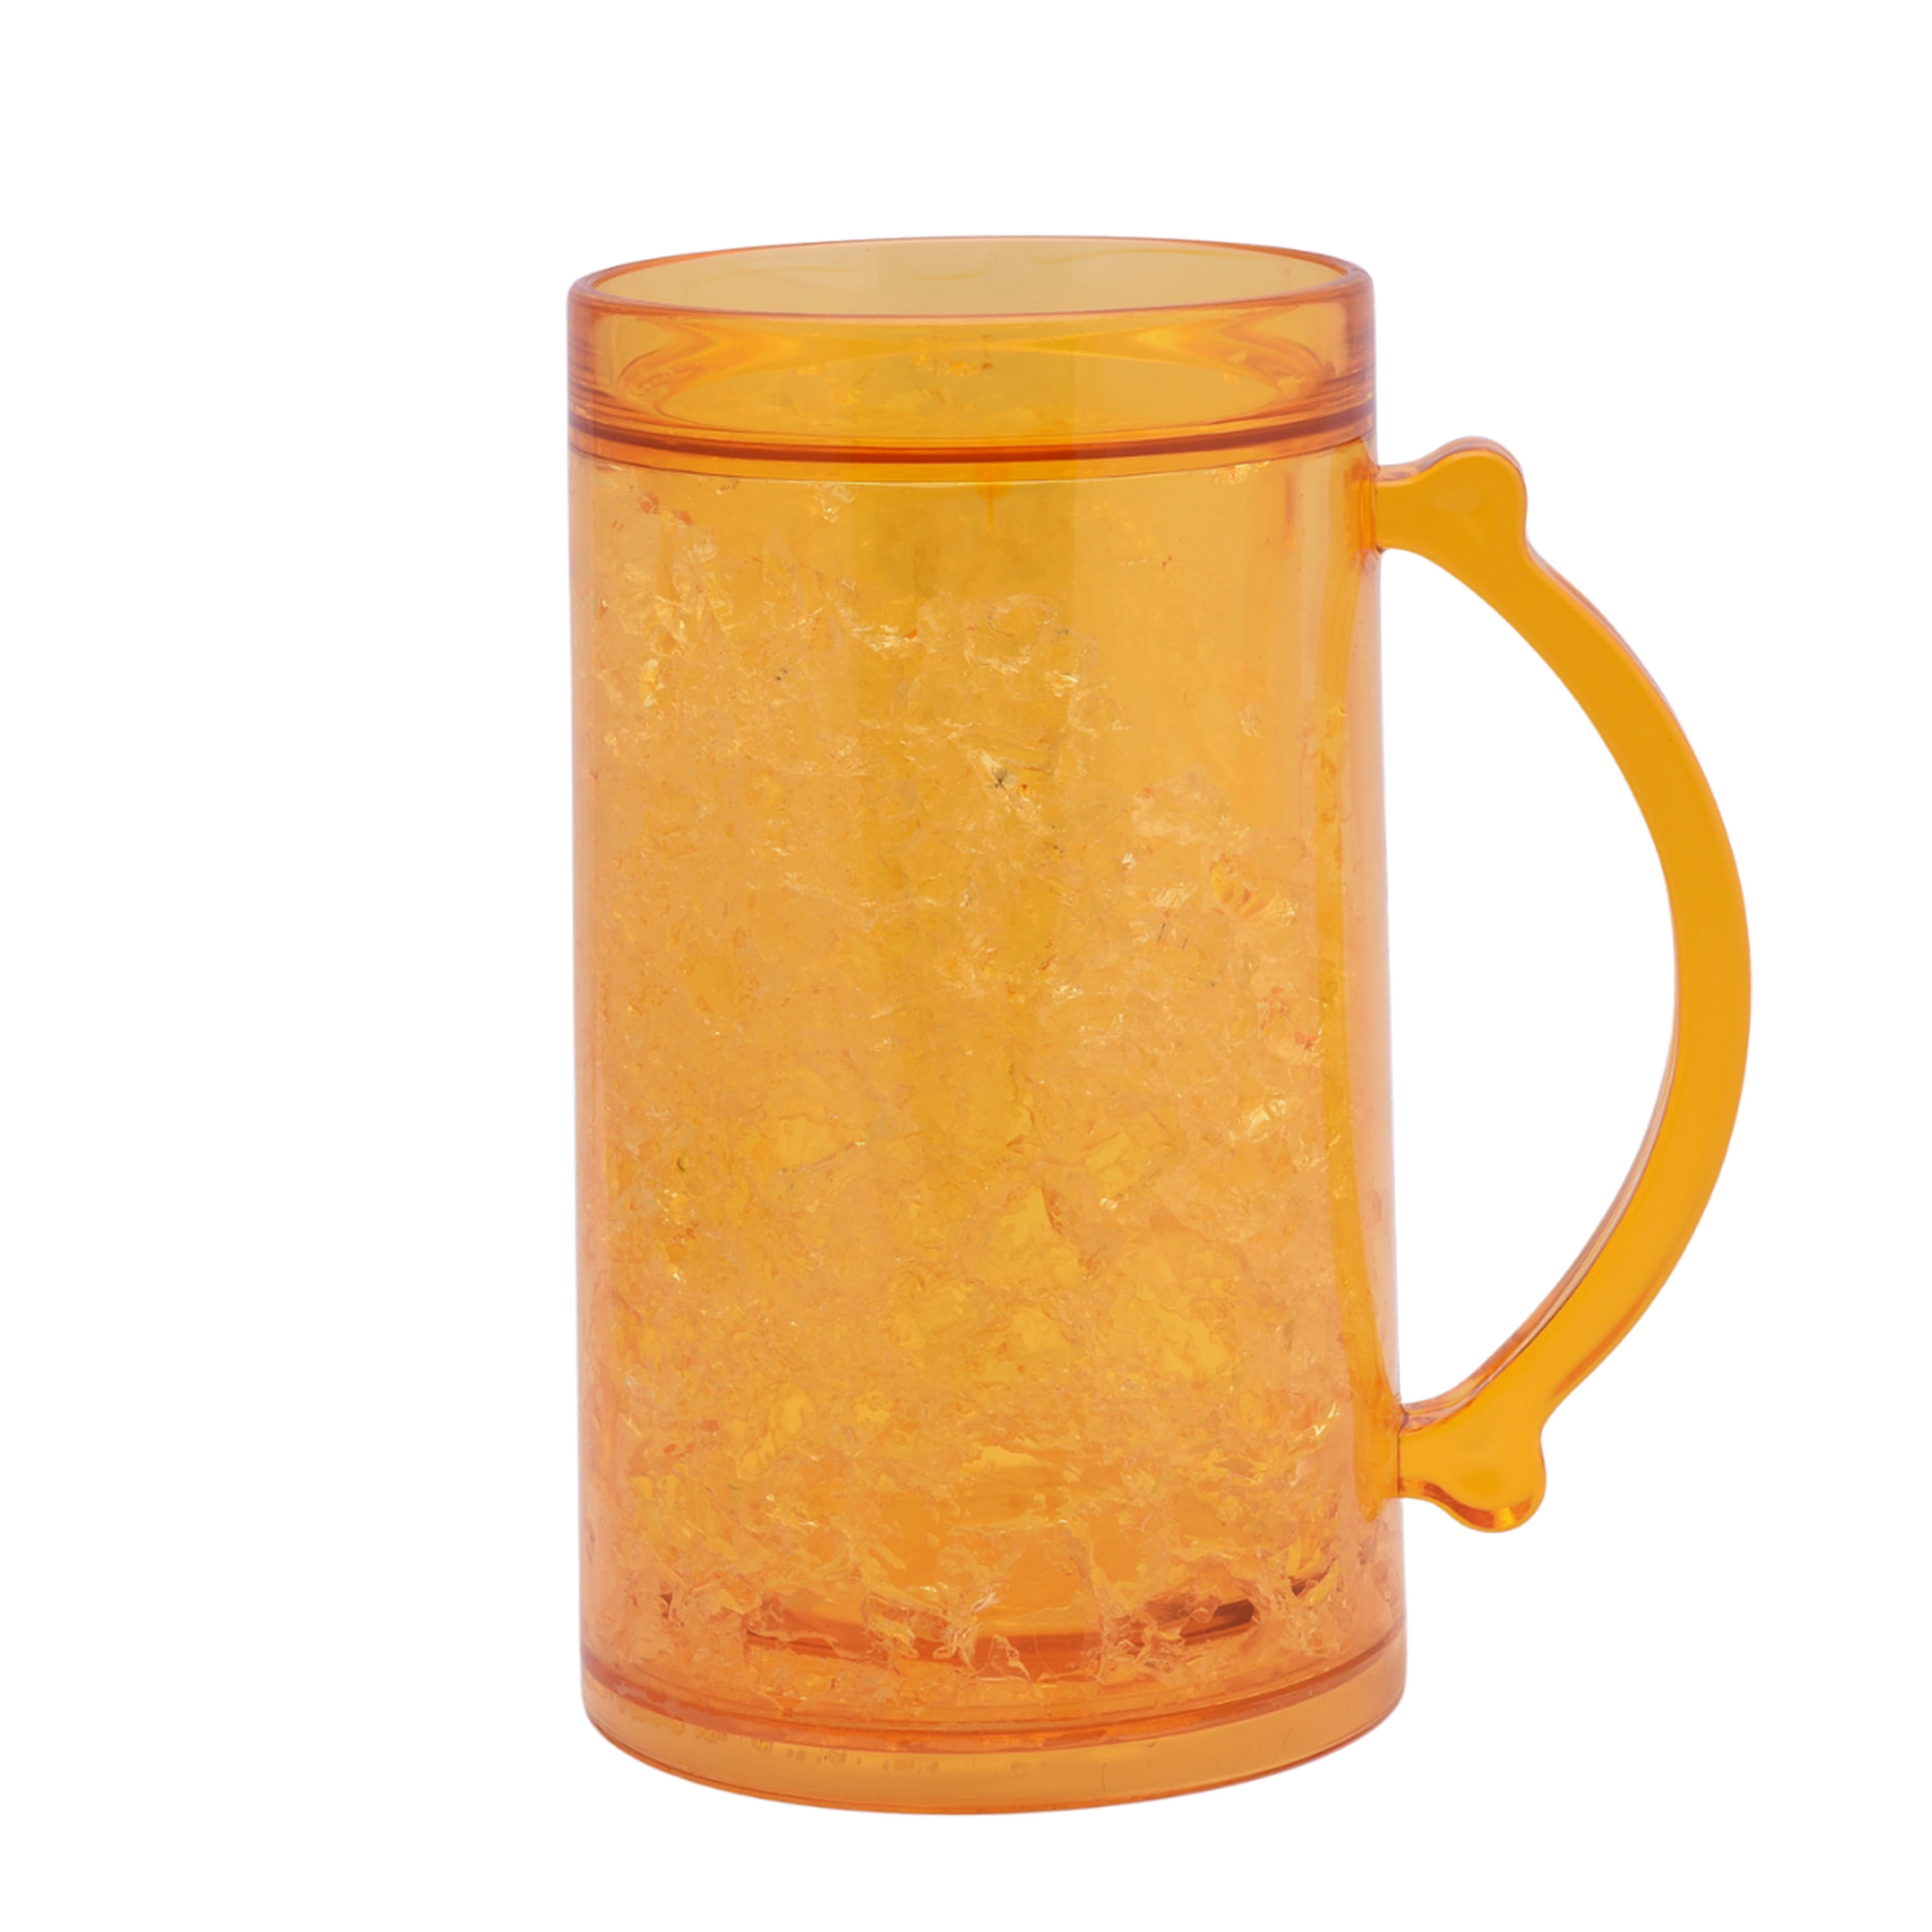 Wwyybfk Beer Mug Set, Freezer Glasses Beer Mug with Handle, 18oz Skull Beer Glasses Cups for Men, Bar, Beverage, Dishwasher Freezer Safe 510ml 4-Pack